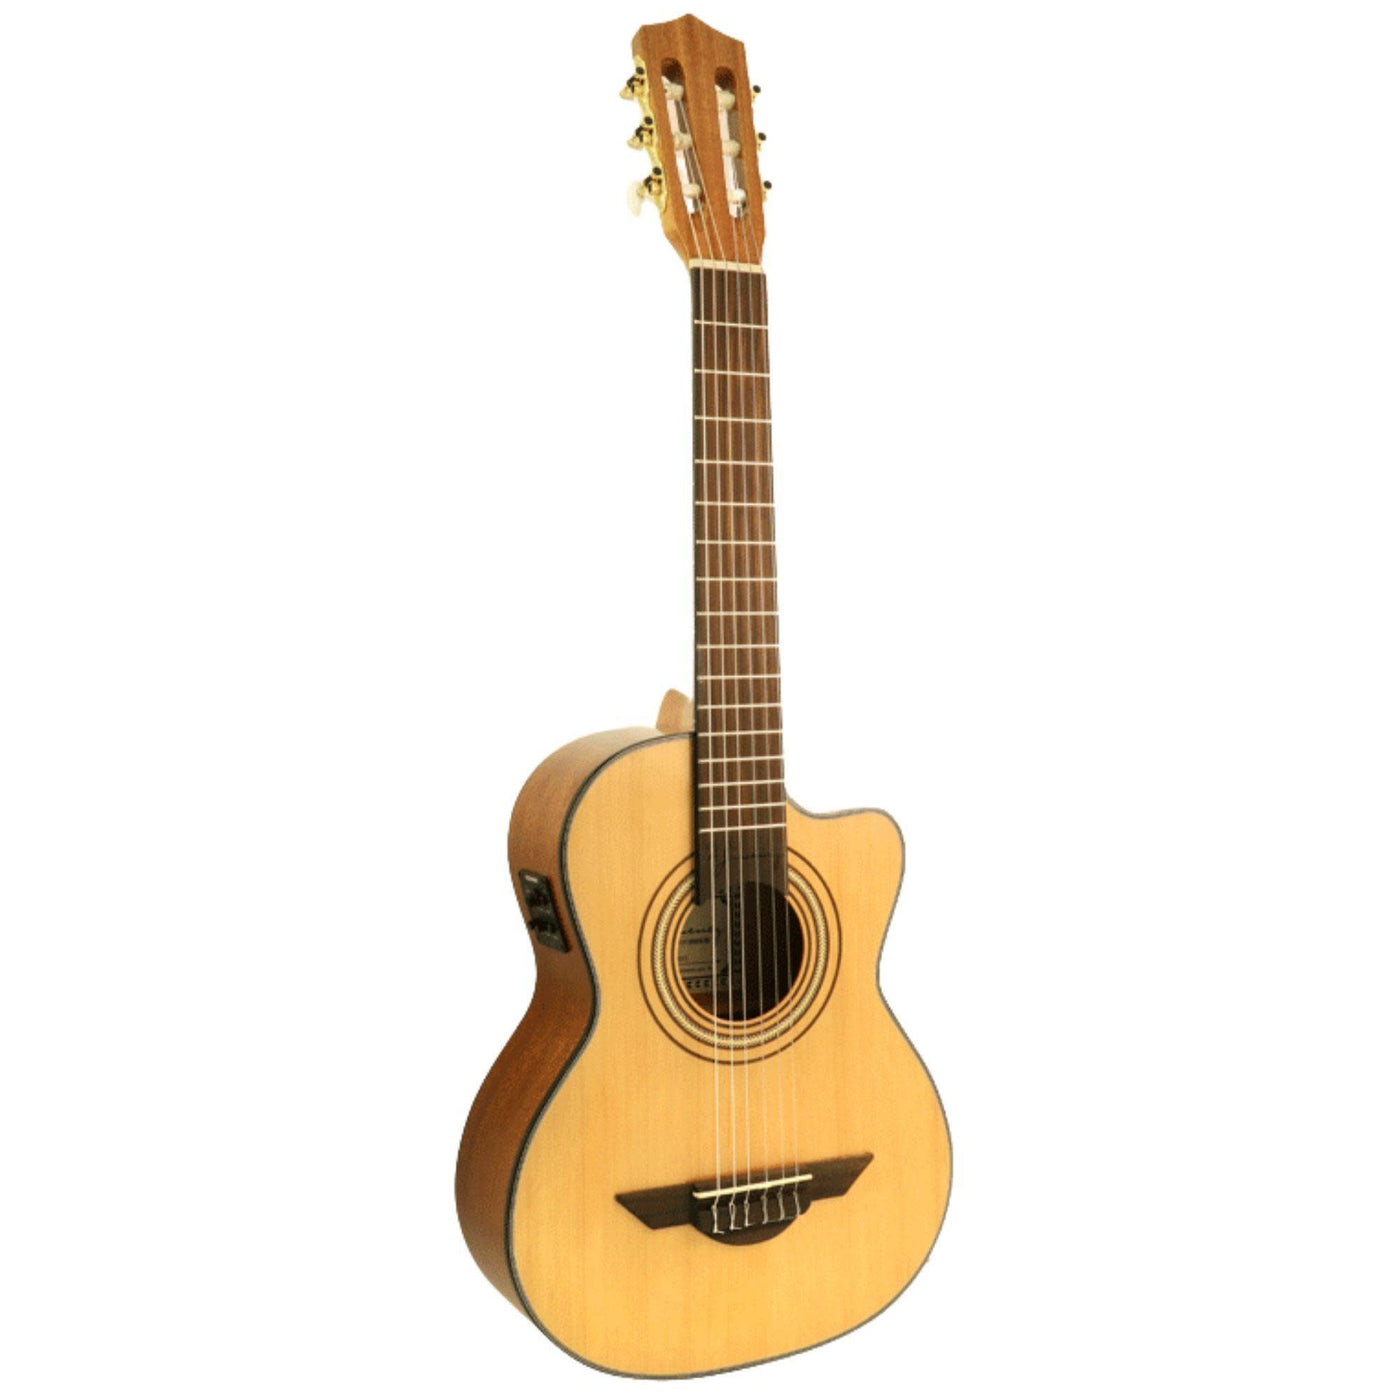 H. Jimenez LG3CE El Maestro Cutaway Acoustic-Electric Guitar